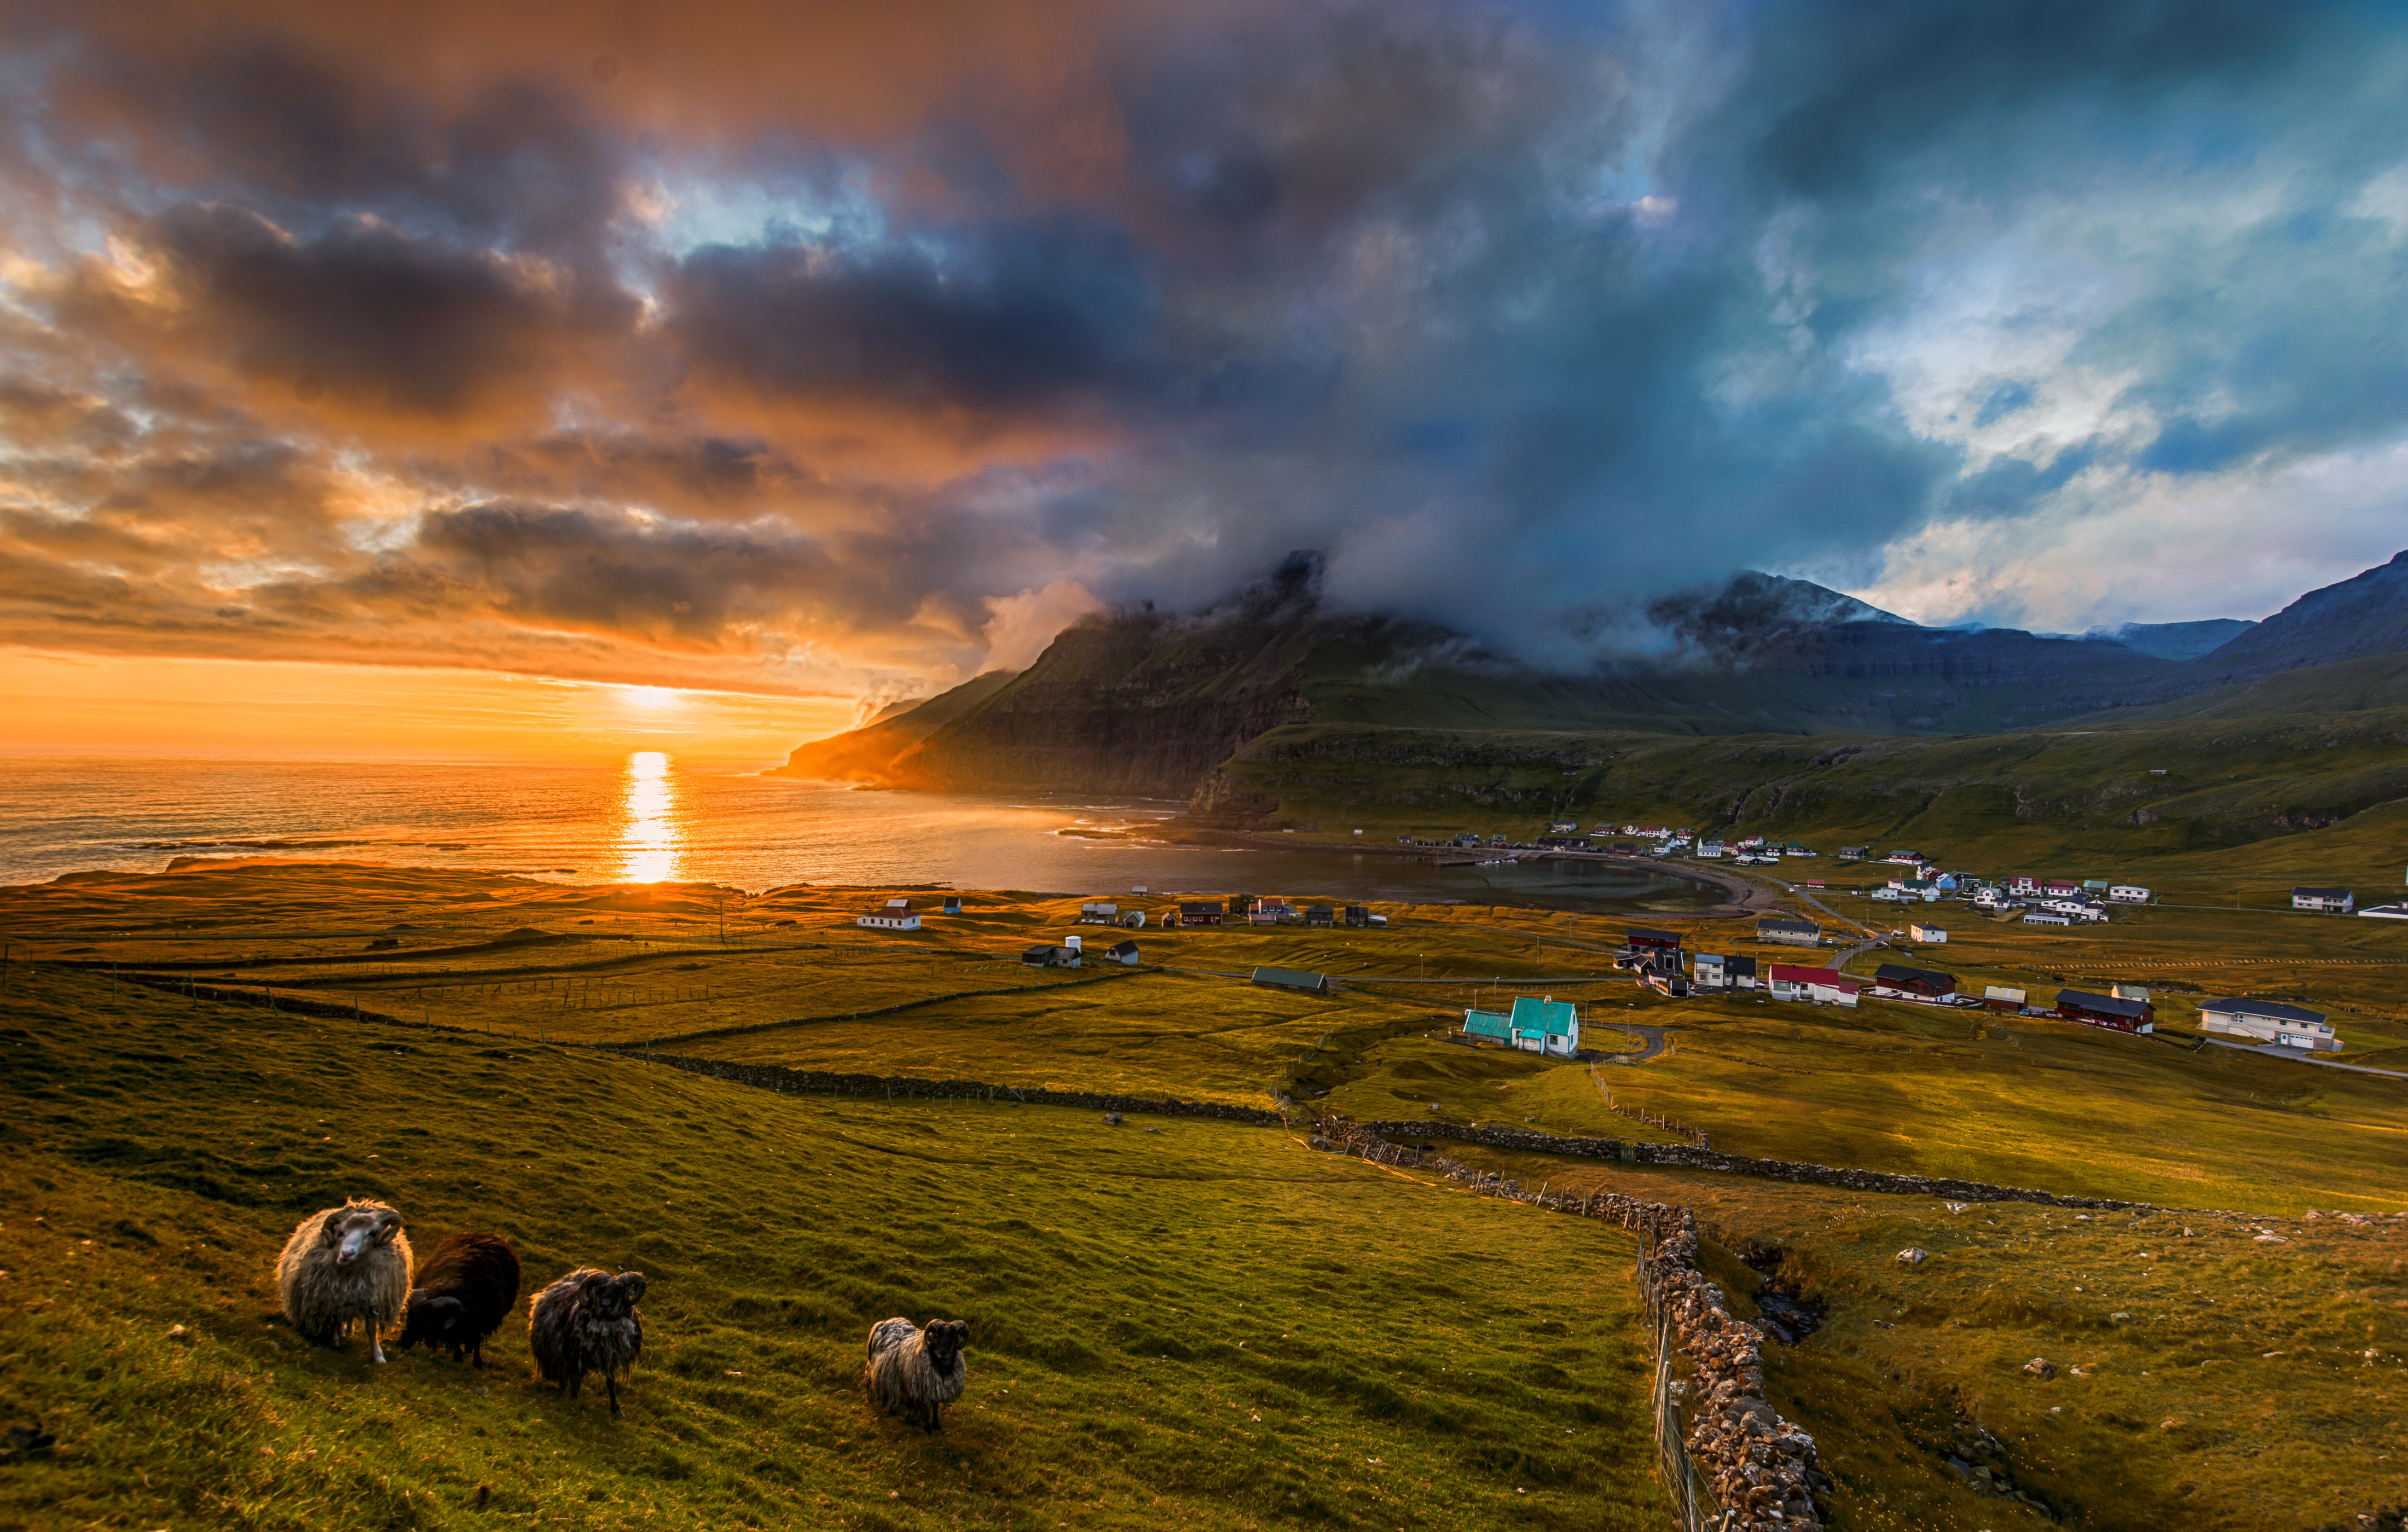 Wallpaper Download A Picturesque Sunset In Famjin, - Faroe Islands , HD Wallpaper & Backgrounds